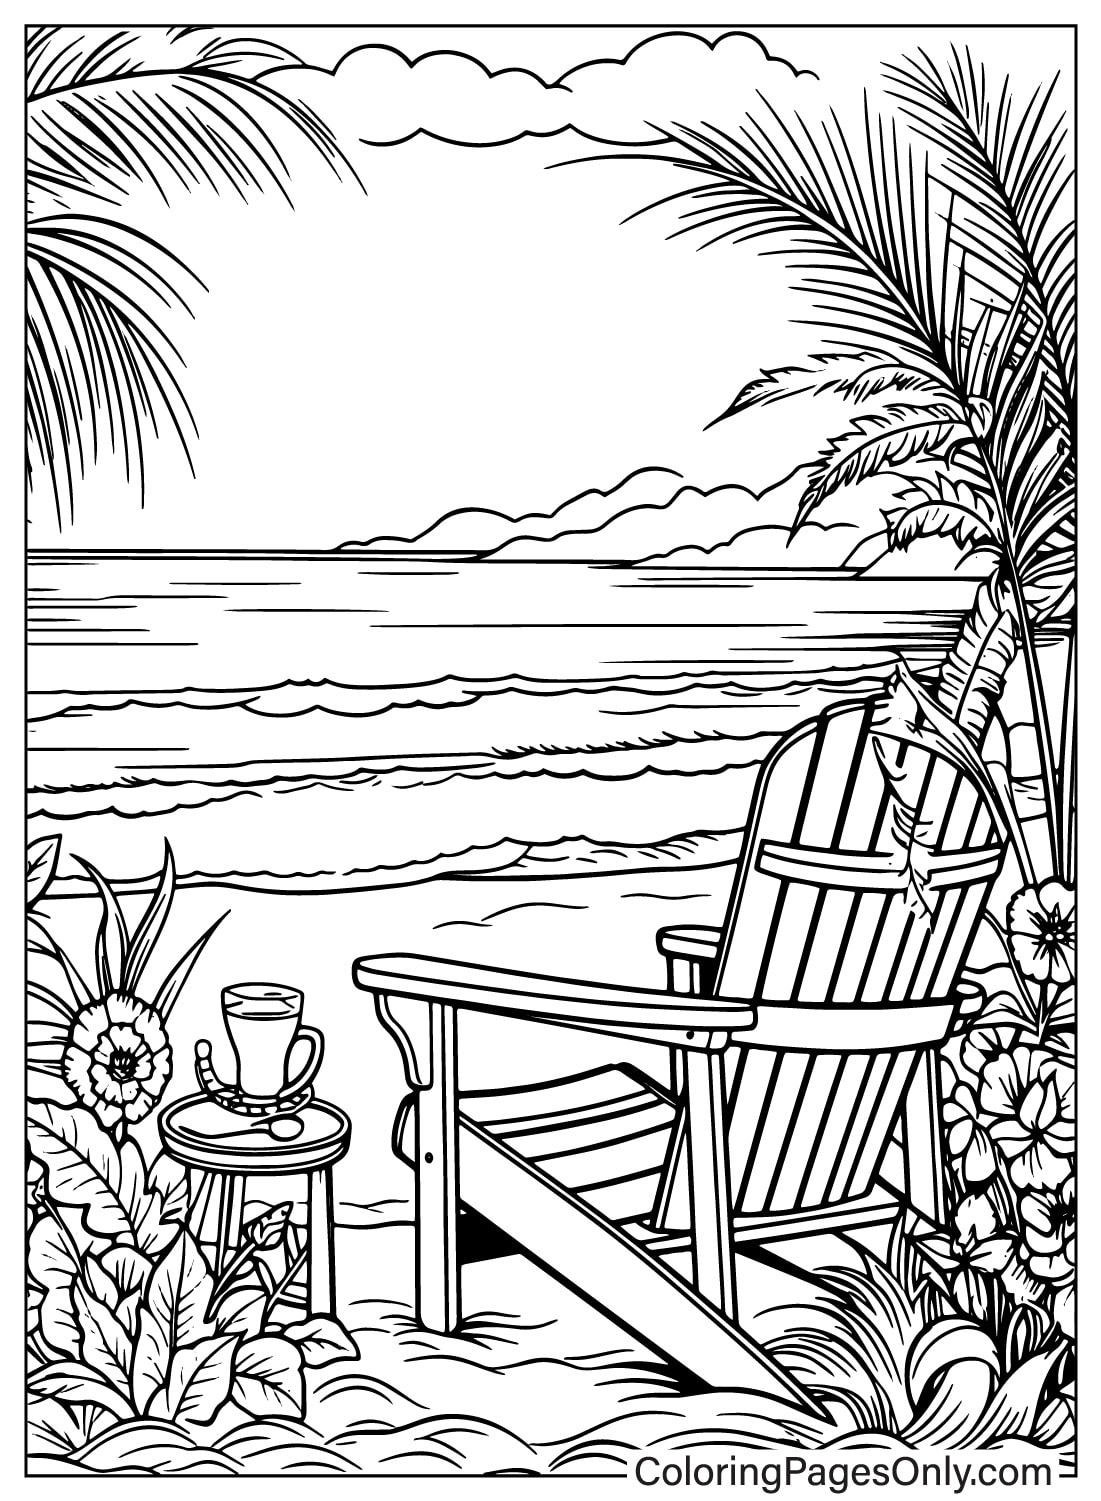 Un dibujo de una escena de playa con una silla y palmeras.